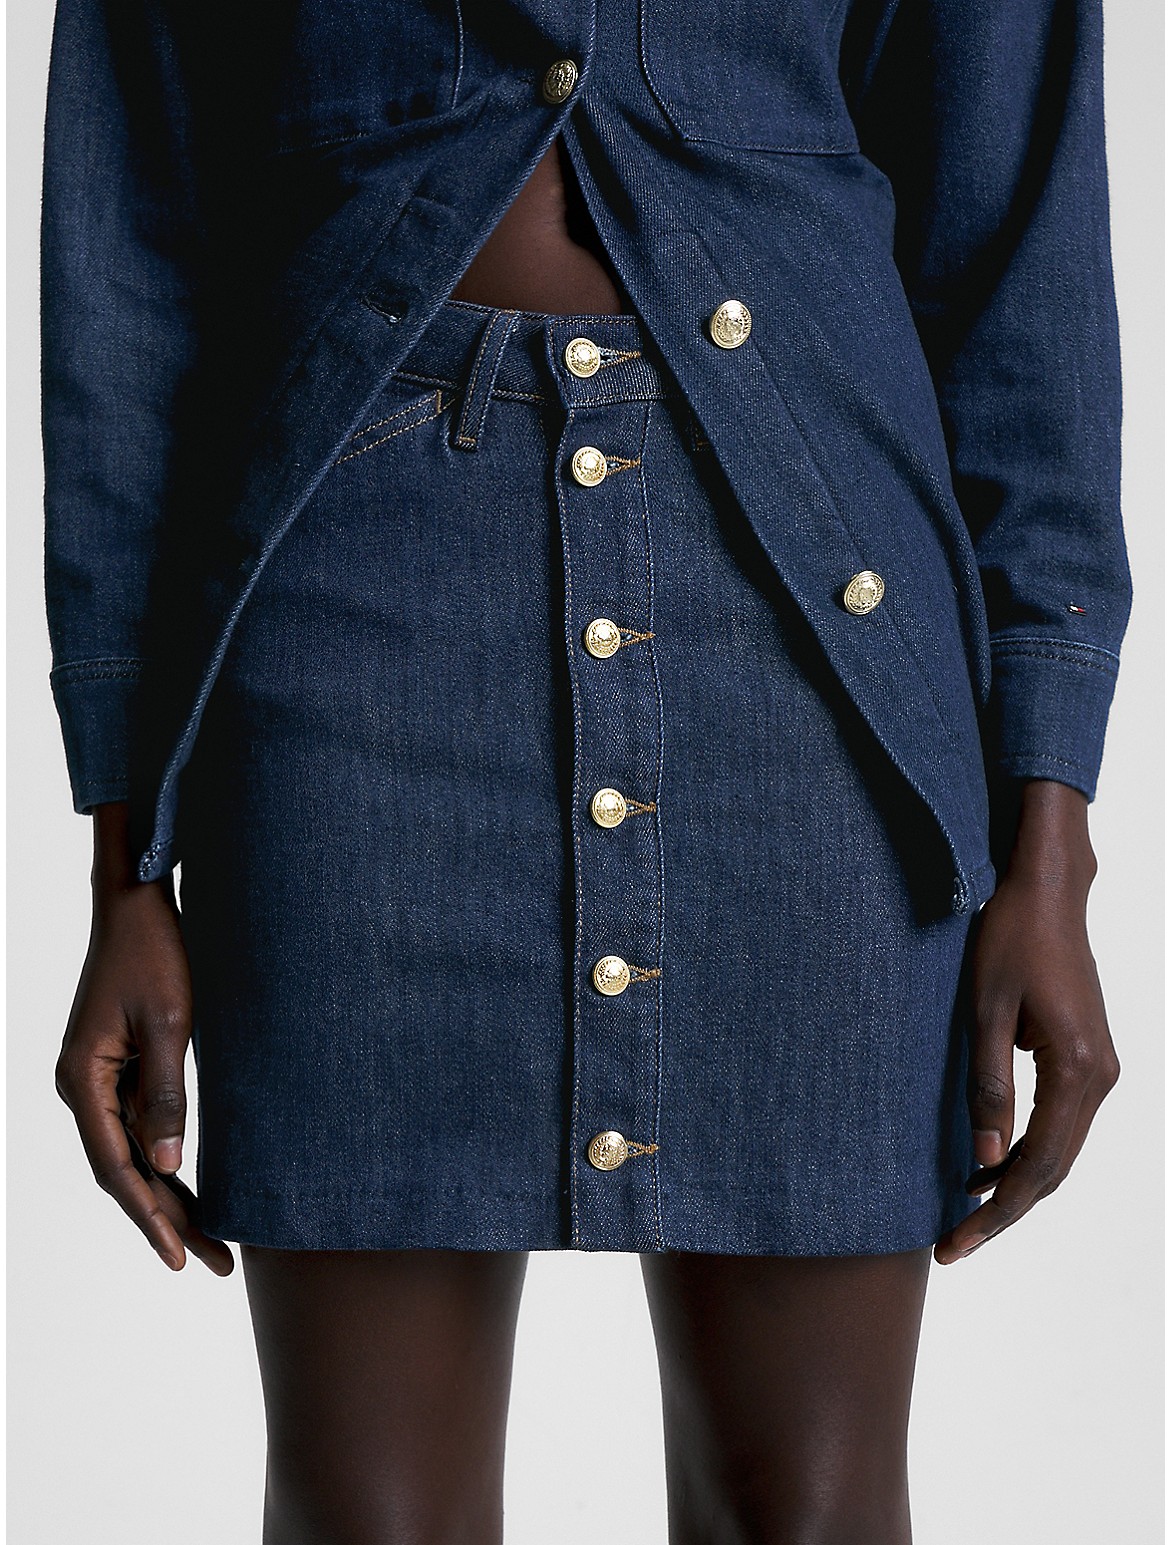 Tommy Hilfiger Women's High Waist Button Front Denim Mini Skirt - Blue - 4